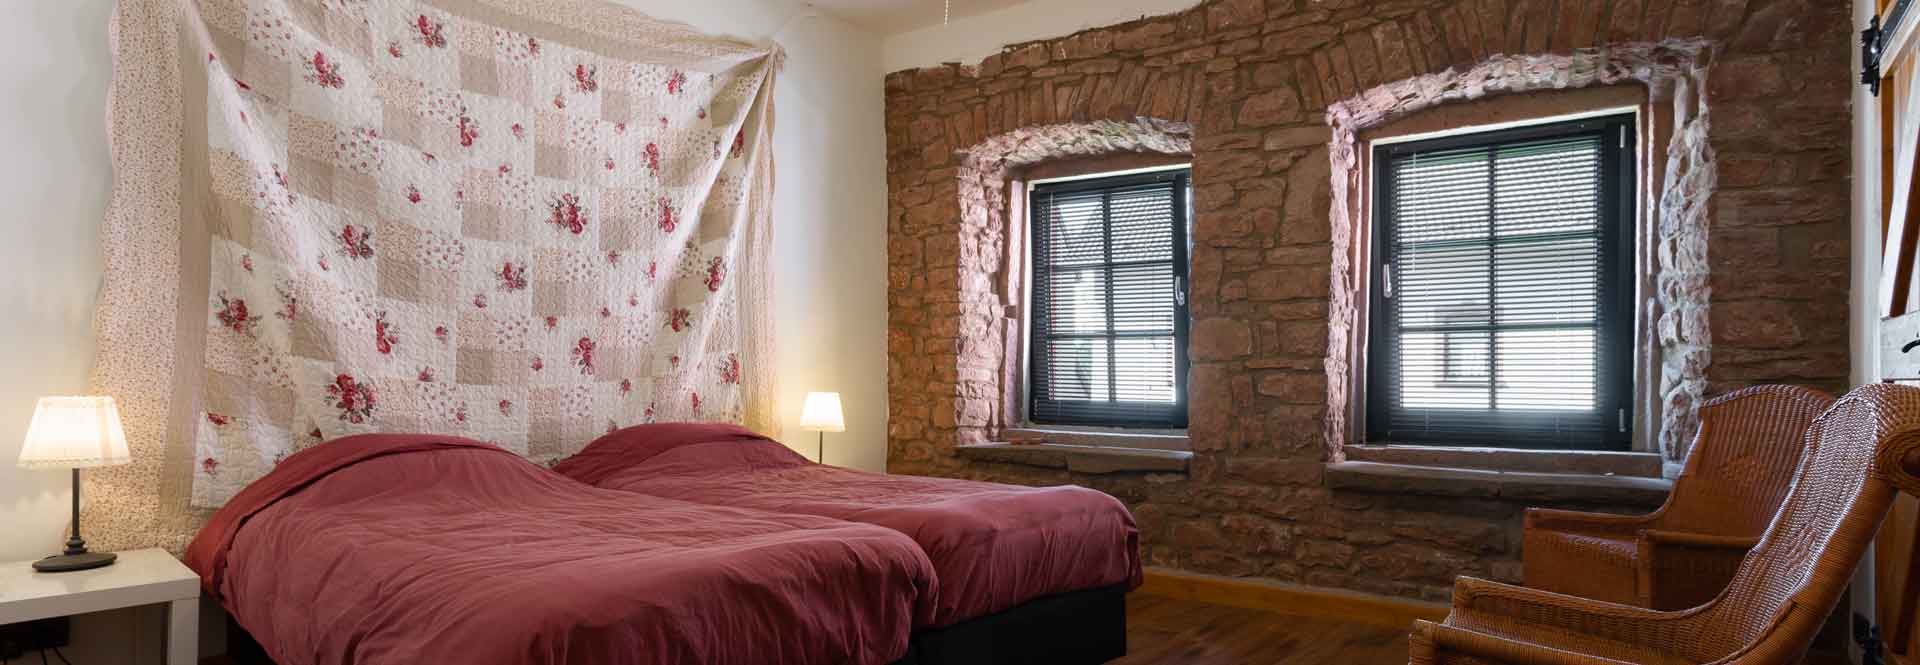 rustieke slaapkamer met kinderbed en grote kledingkast